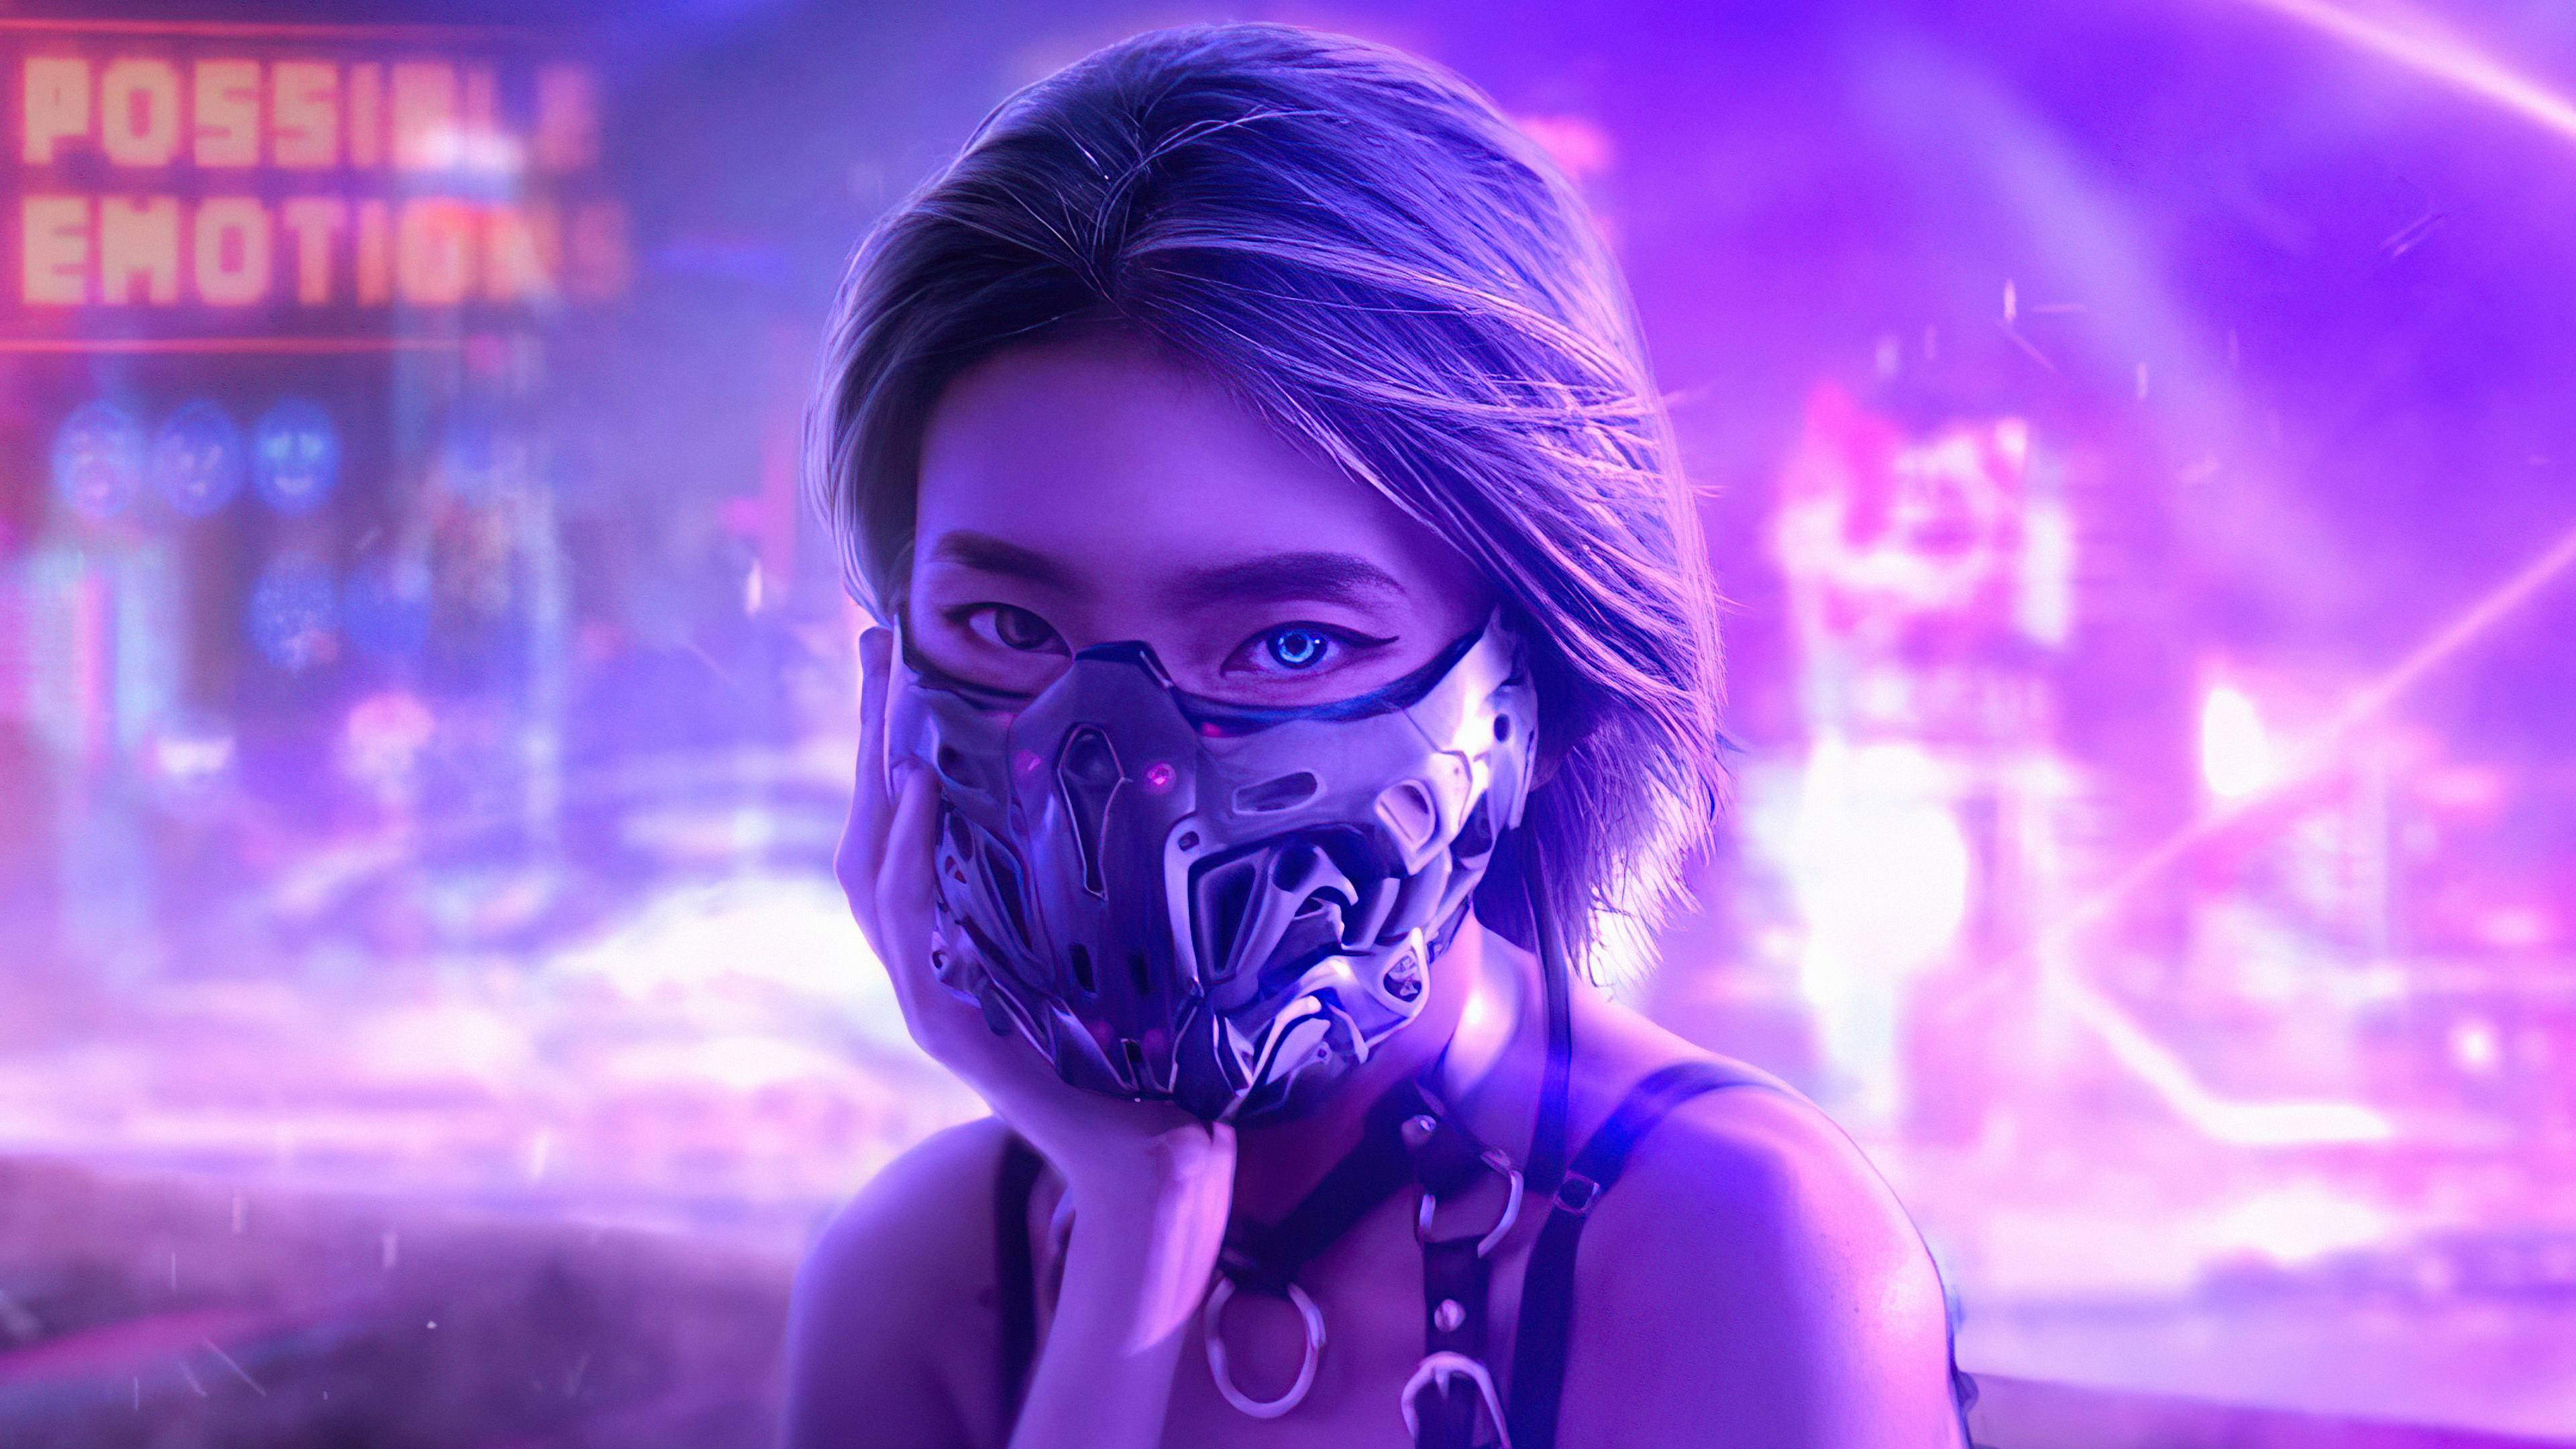 Cyberpunk Futuristic Girl 3840x2160